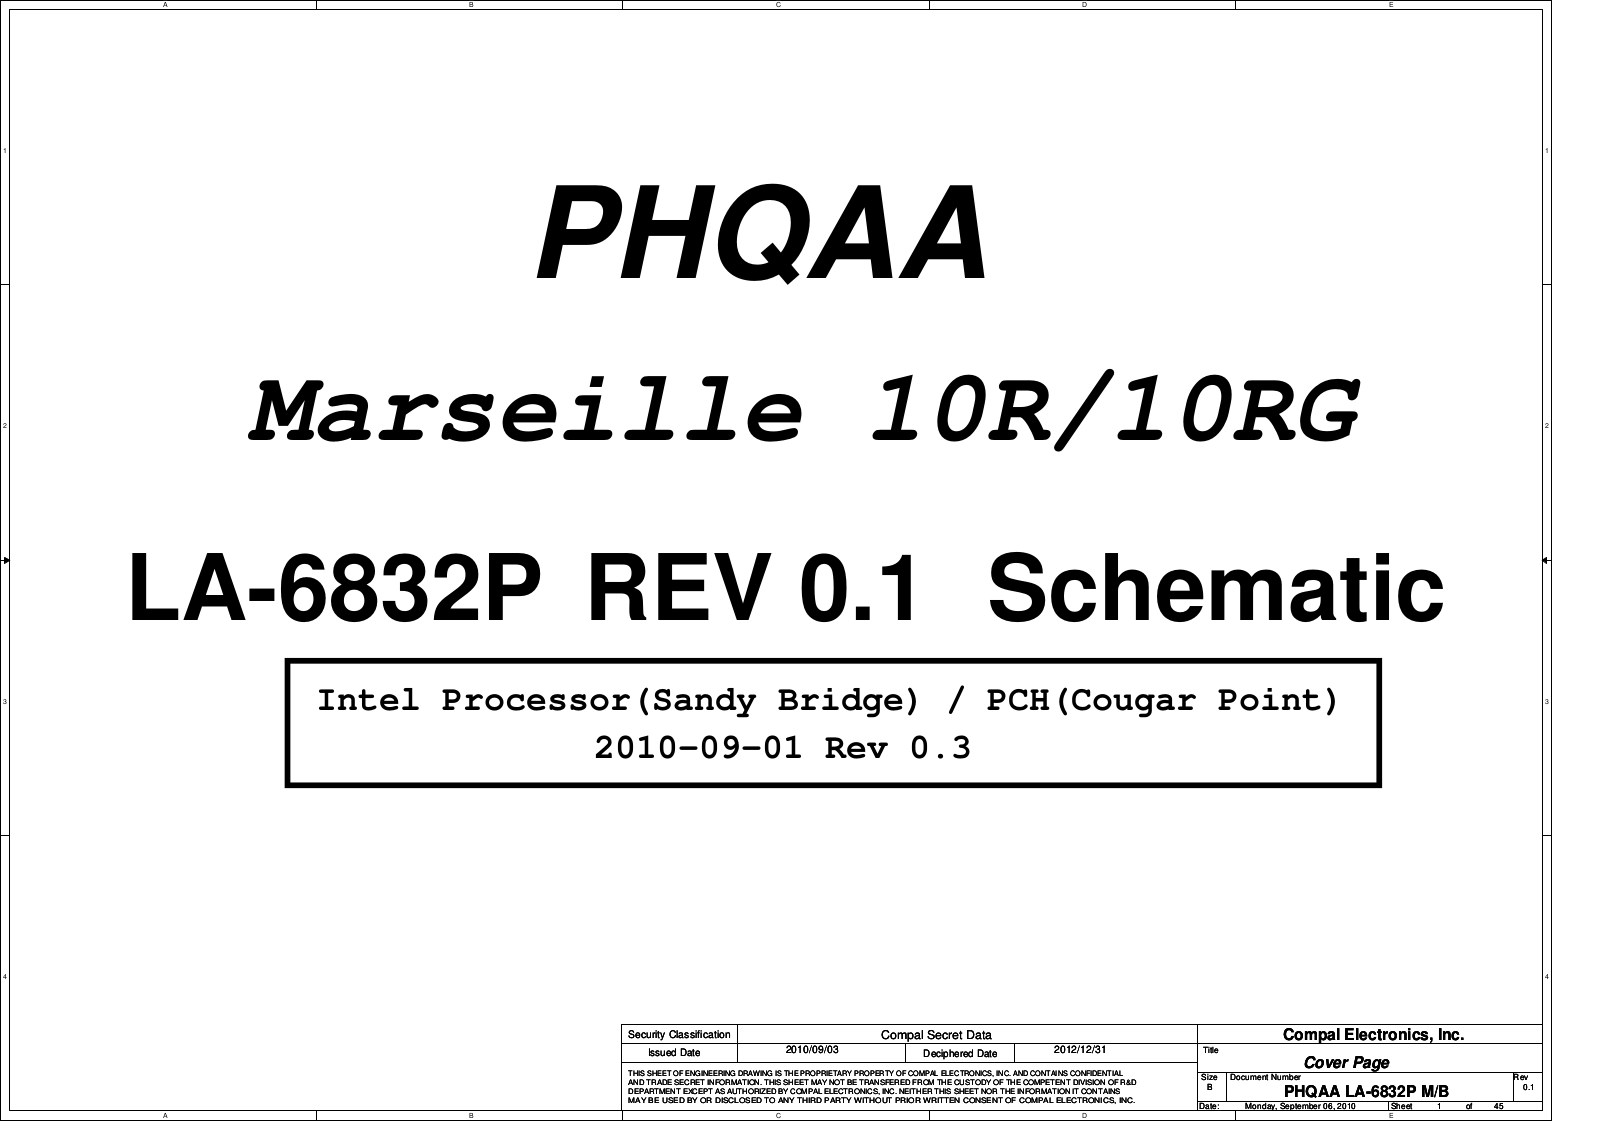 Compal LA-6832P PHQAA Marseille 10R, Satellite P750, Satellite P775, LA-6832P PHQAA Marseille 10RG Schematic